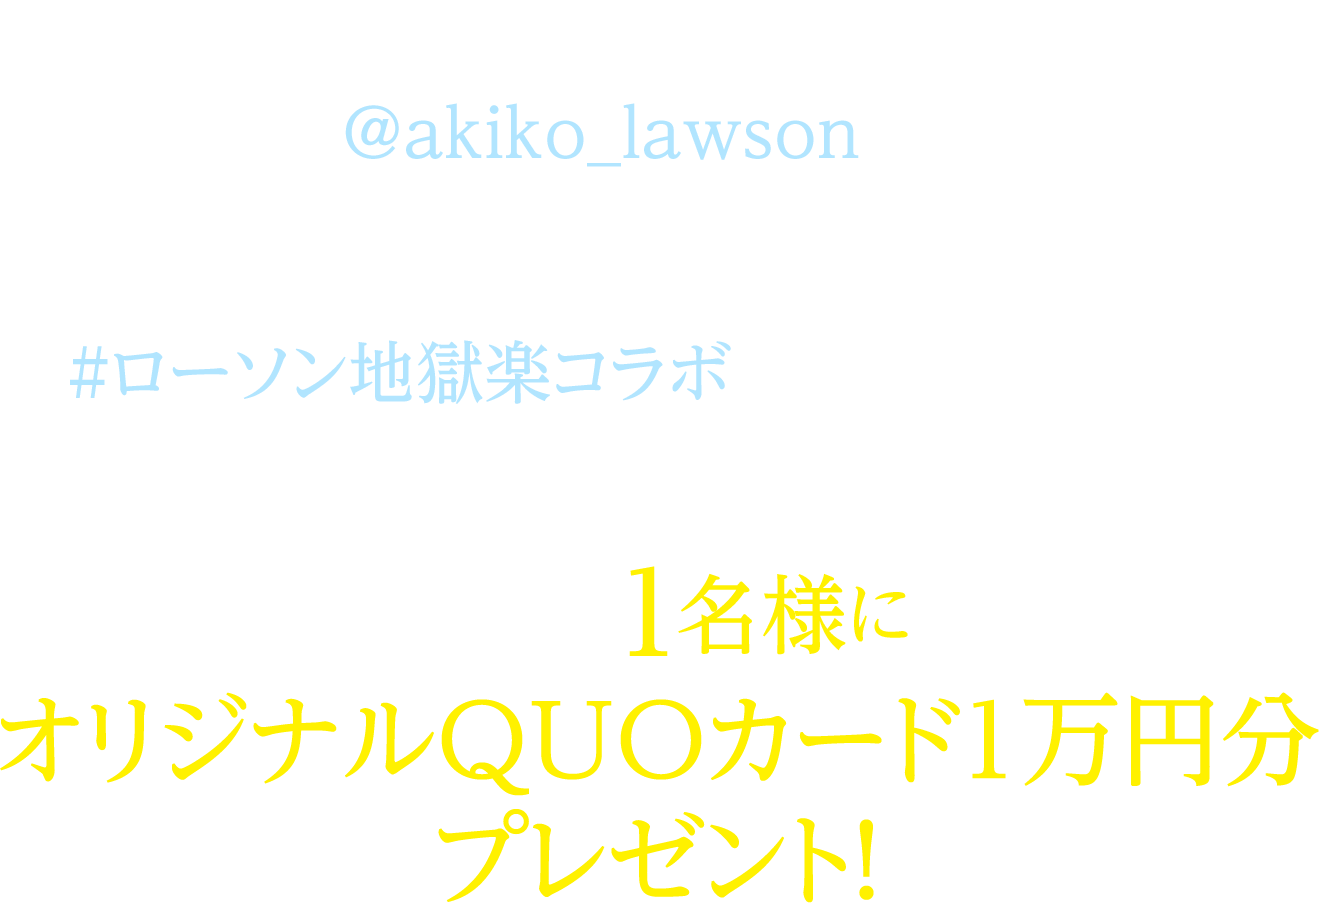 期間中にローソン公式Twitterアカウント「ローソン (@akiko_lawson)」をフォローし、対象ツイートに「#ローソン地獄楽コラボ」とコメントを入れて引用ツイートした方の中から抽選で1名様にオリジナルQUOカード1万円分プレゼント！